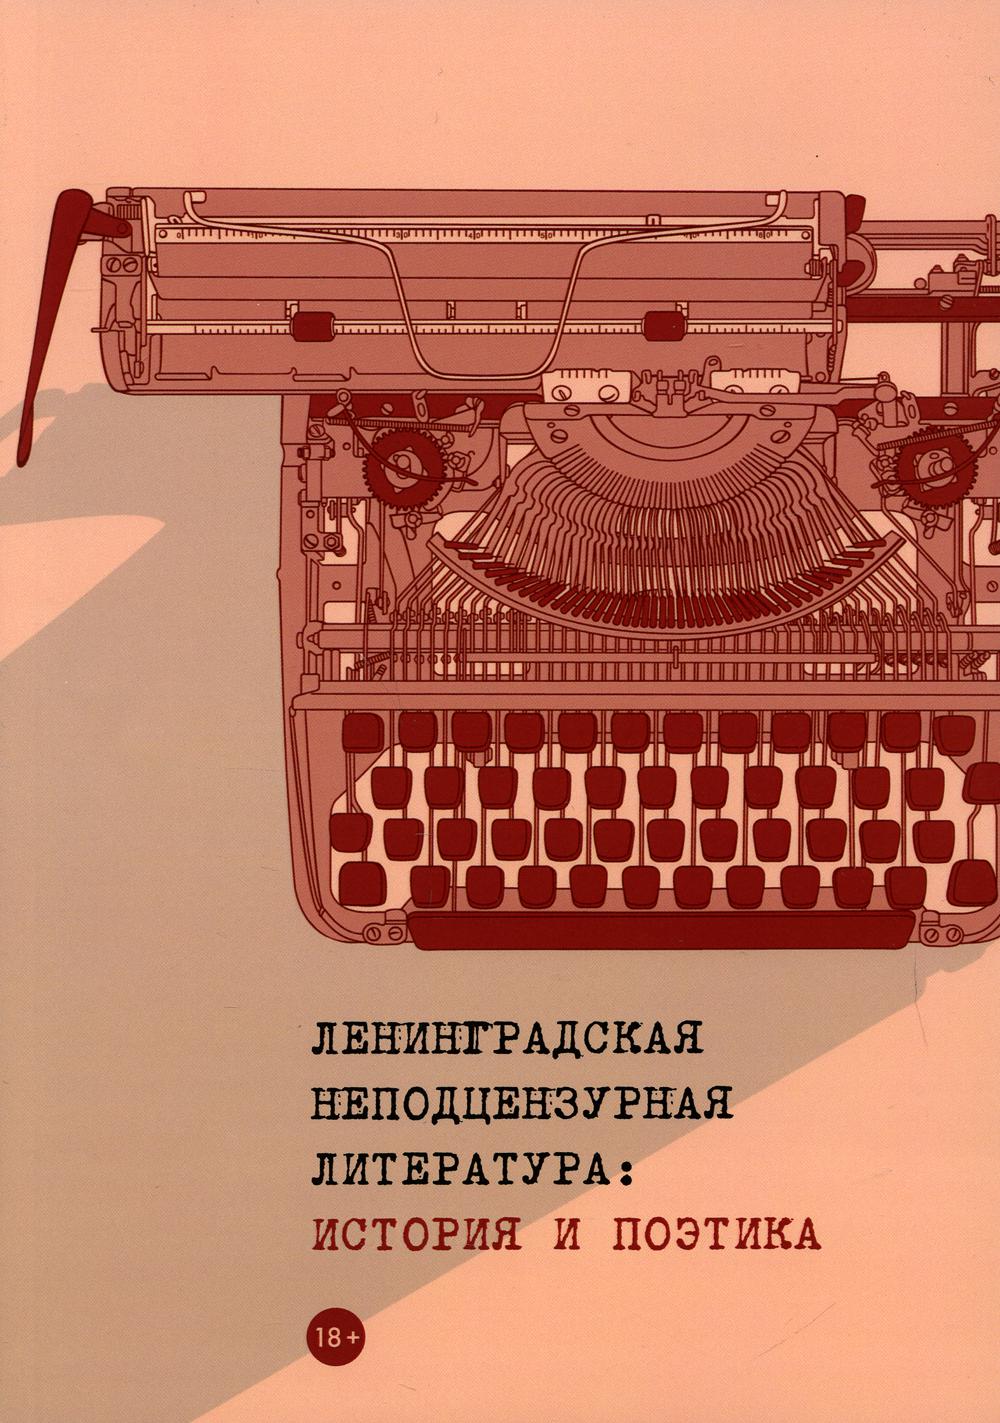 фото Книга ленинградская неподцензурная литература: история и поэтика rugram пальмира